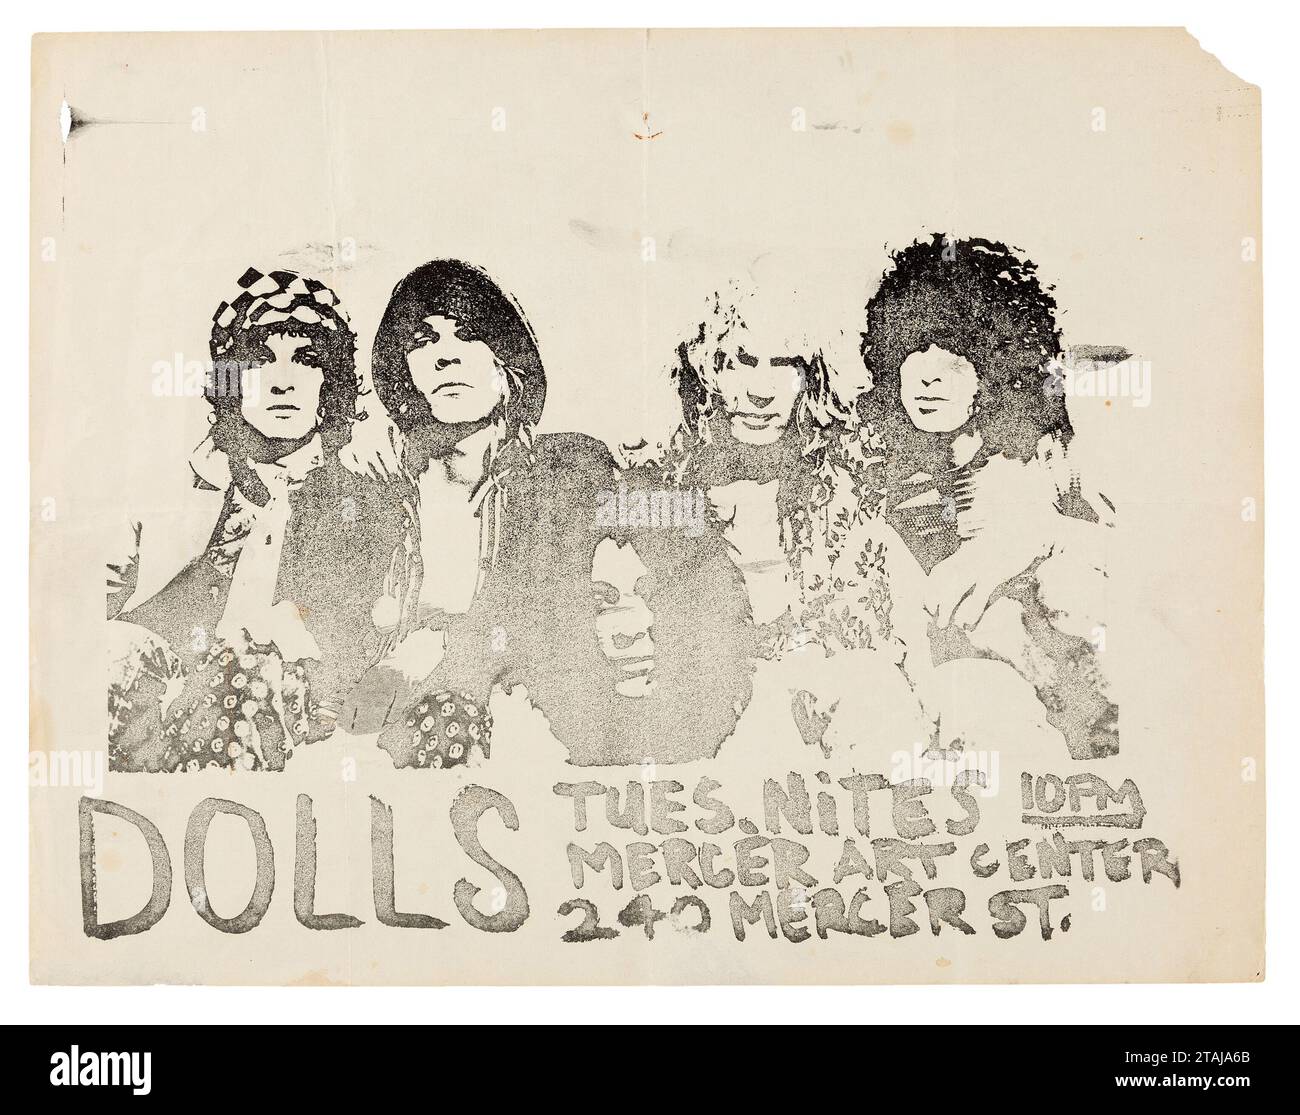 New York Dolls Mercer Art Center Concert Handbill - flyer (c 1972) Stock Photo